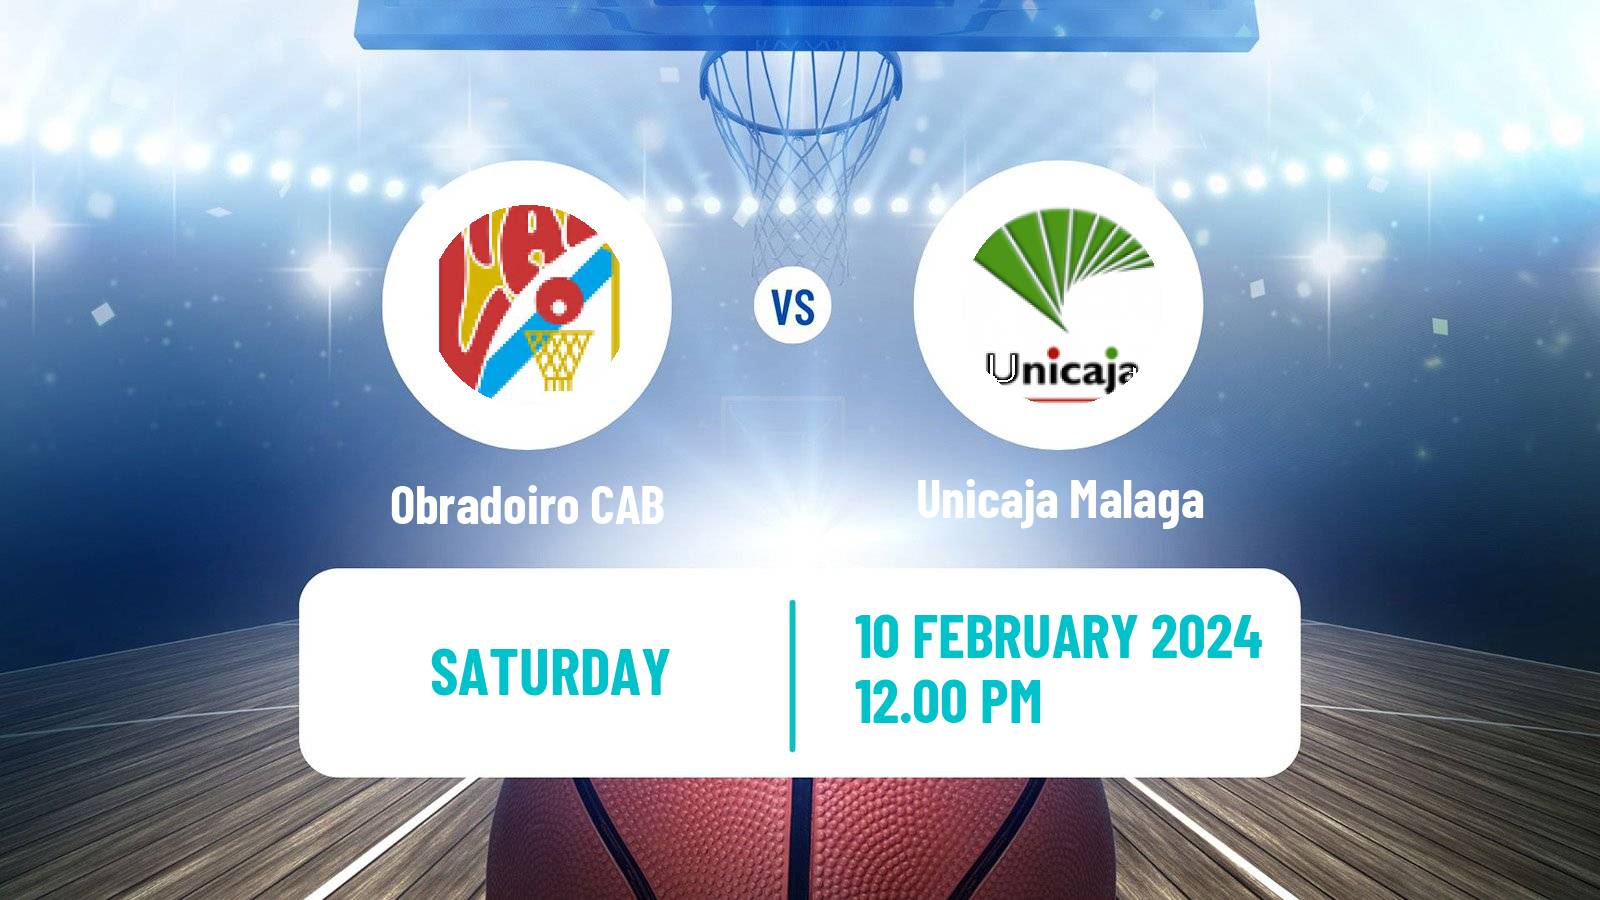 Basketball Spanish ACB League Obradoiro CAB - Unicaja Malaga